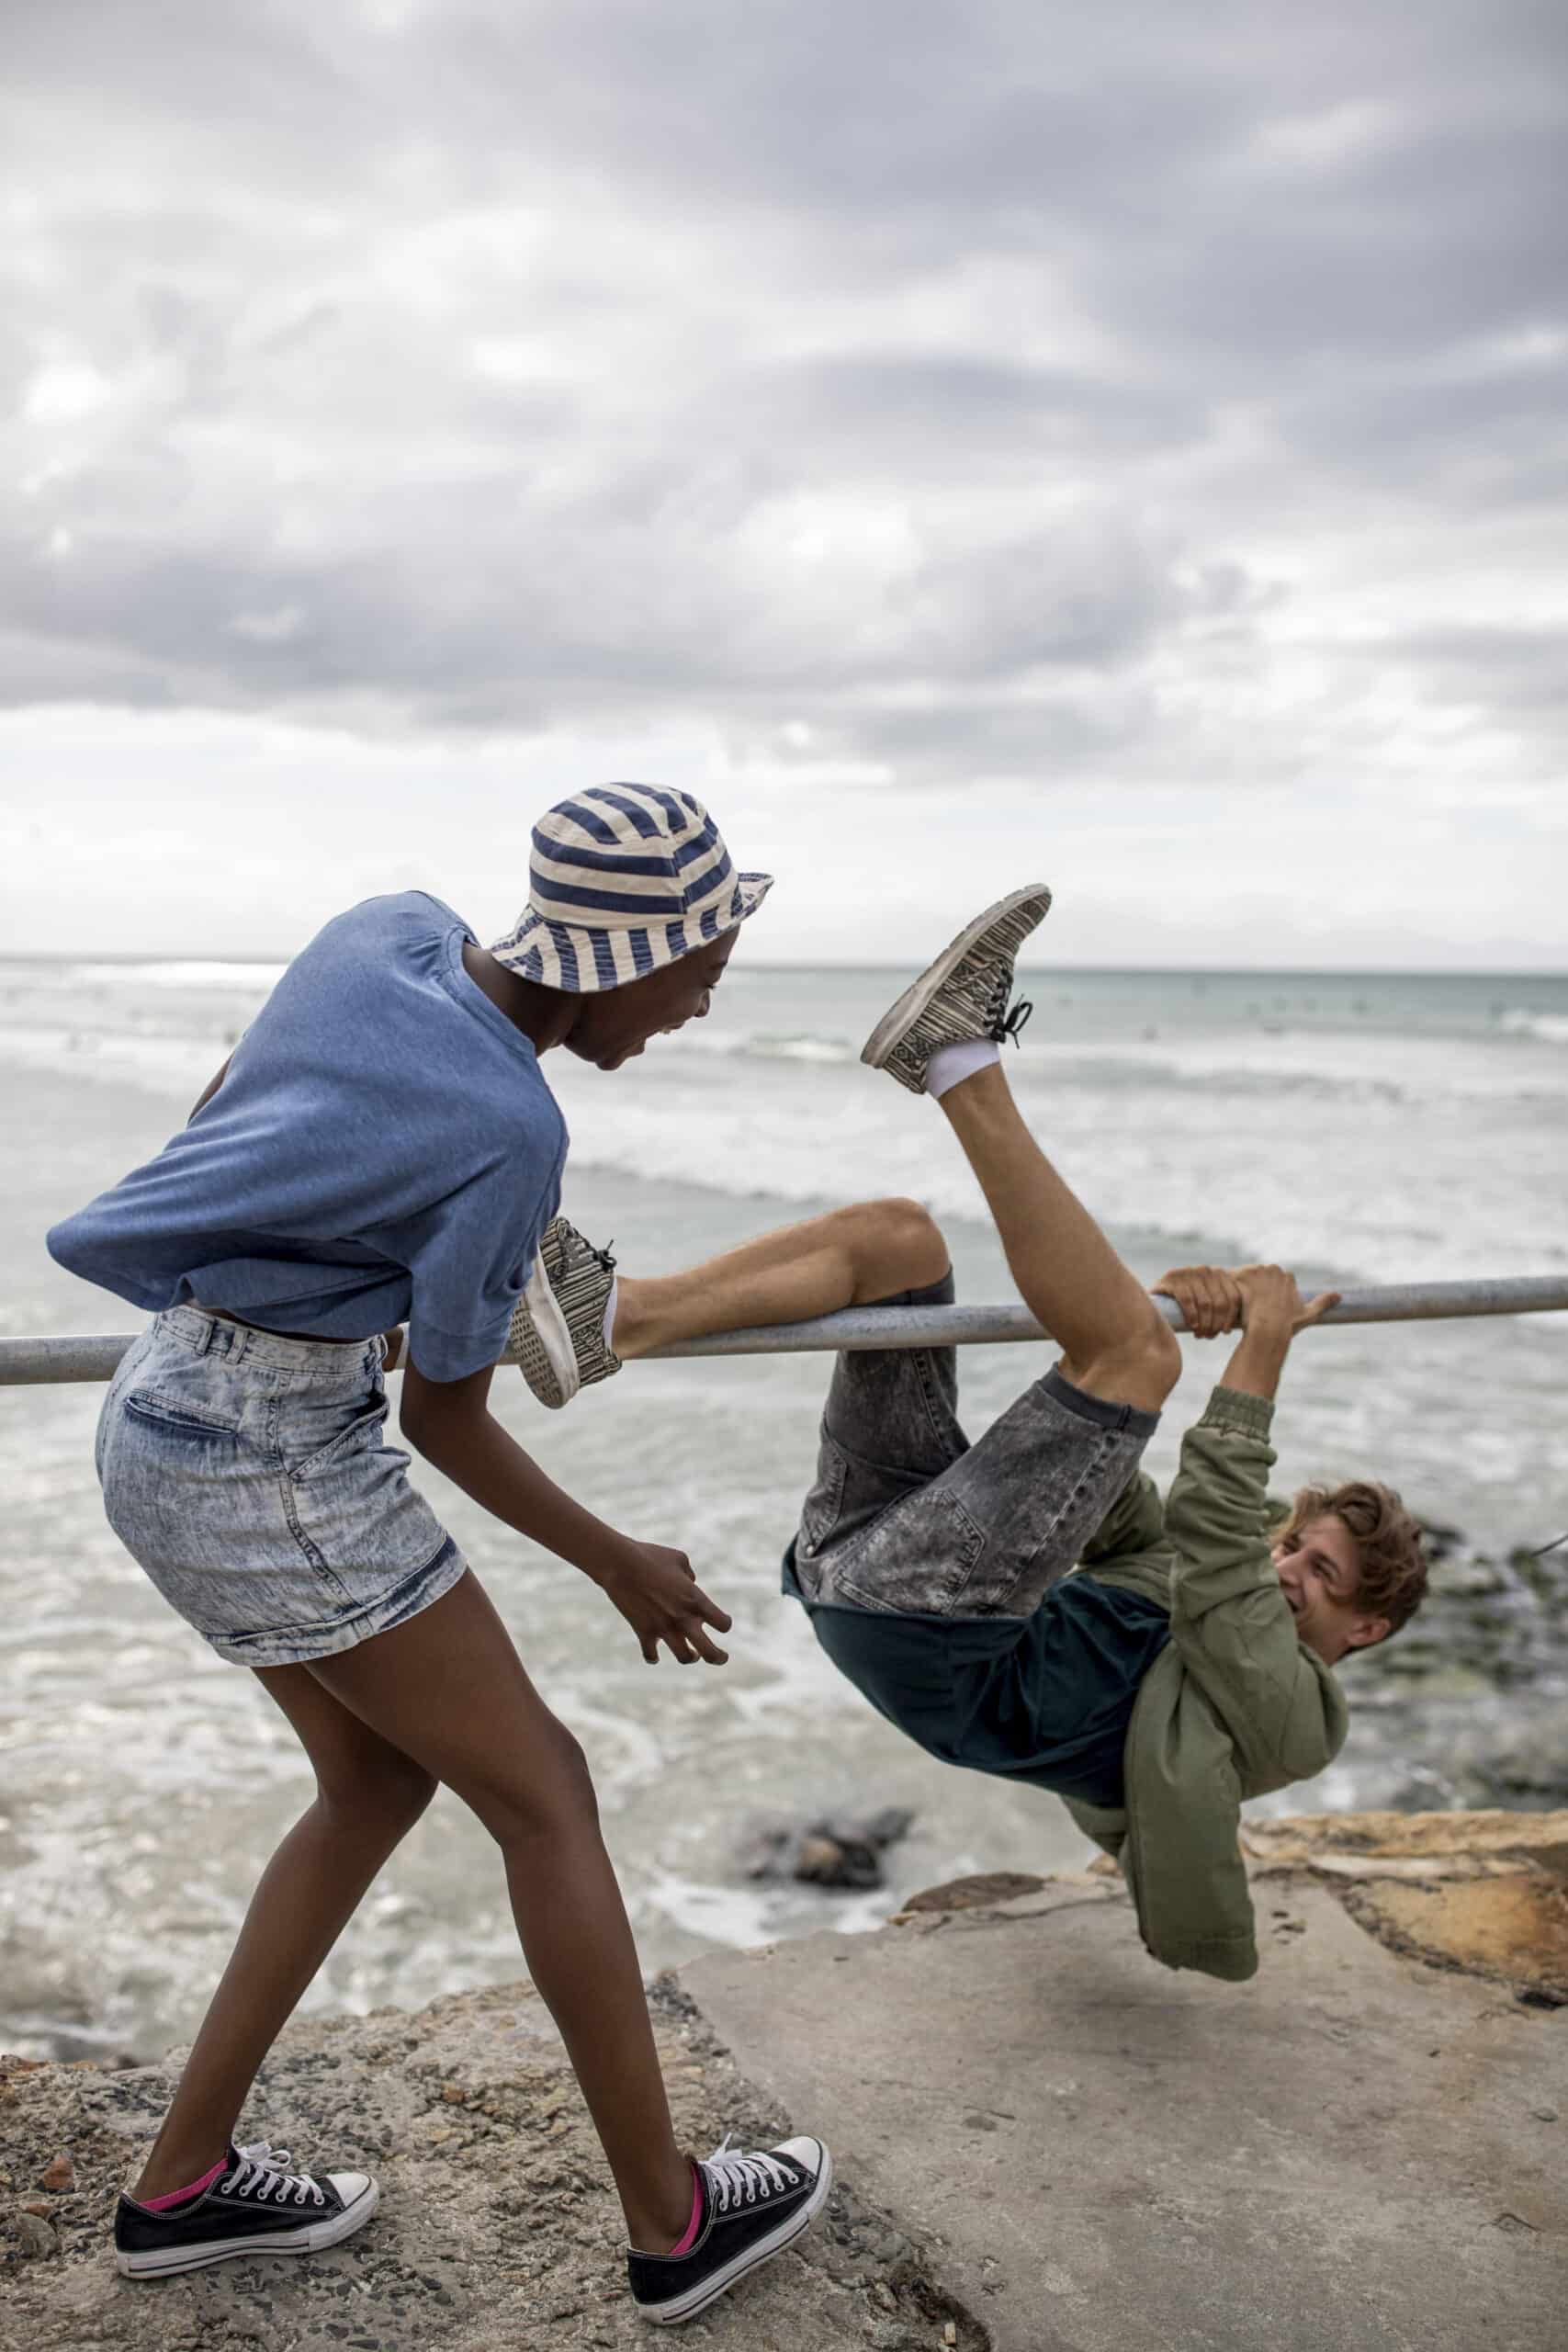 Zwei junge Leute haben an einem bewölkten Tag am Strand Spaß; einer hängt kopfüber an einer Stange, während der andere steht und so tut, als würde er sie spielerisch treten. © Fotografie Tomas Rodriguez